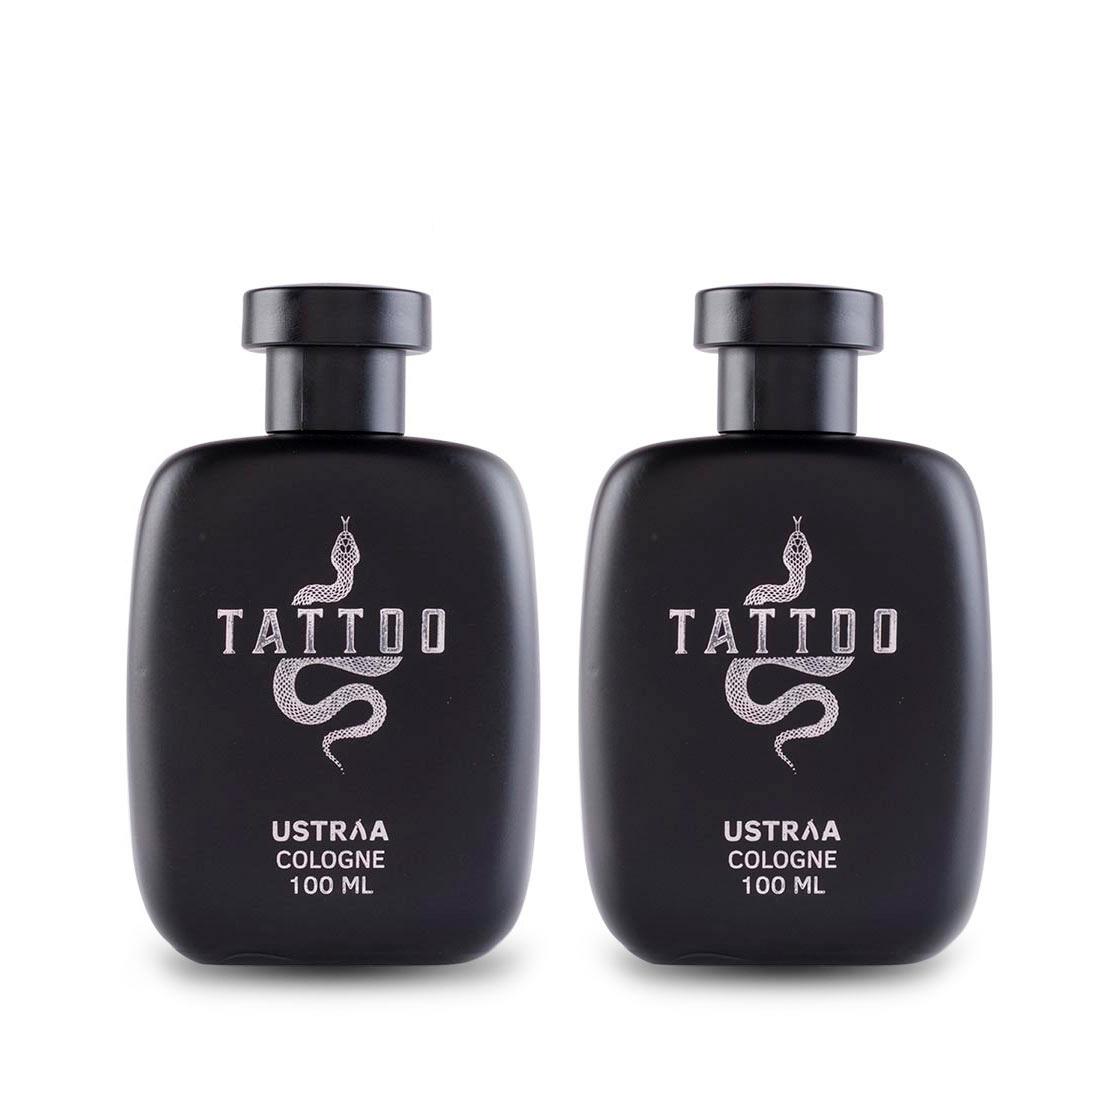 Ustraa Fragrance Gift Box For Men: Tattoo Cologne Set of 2 (100ml)